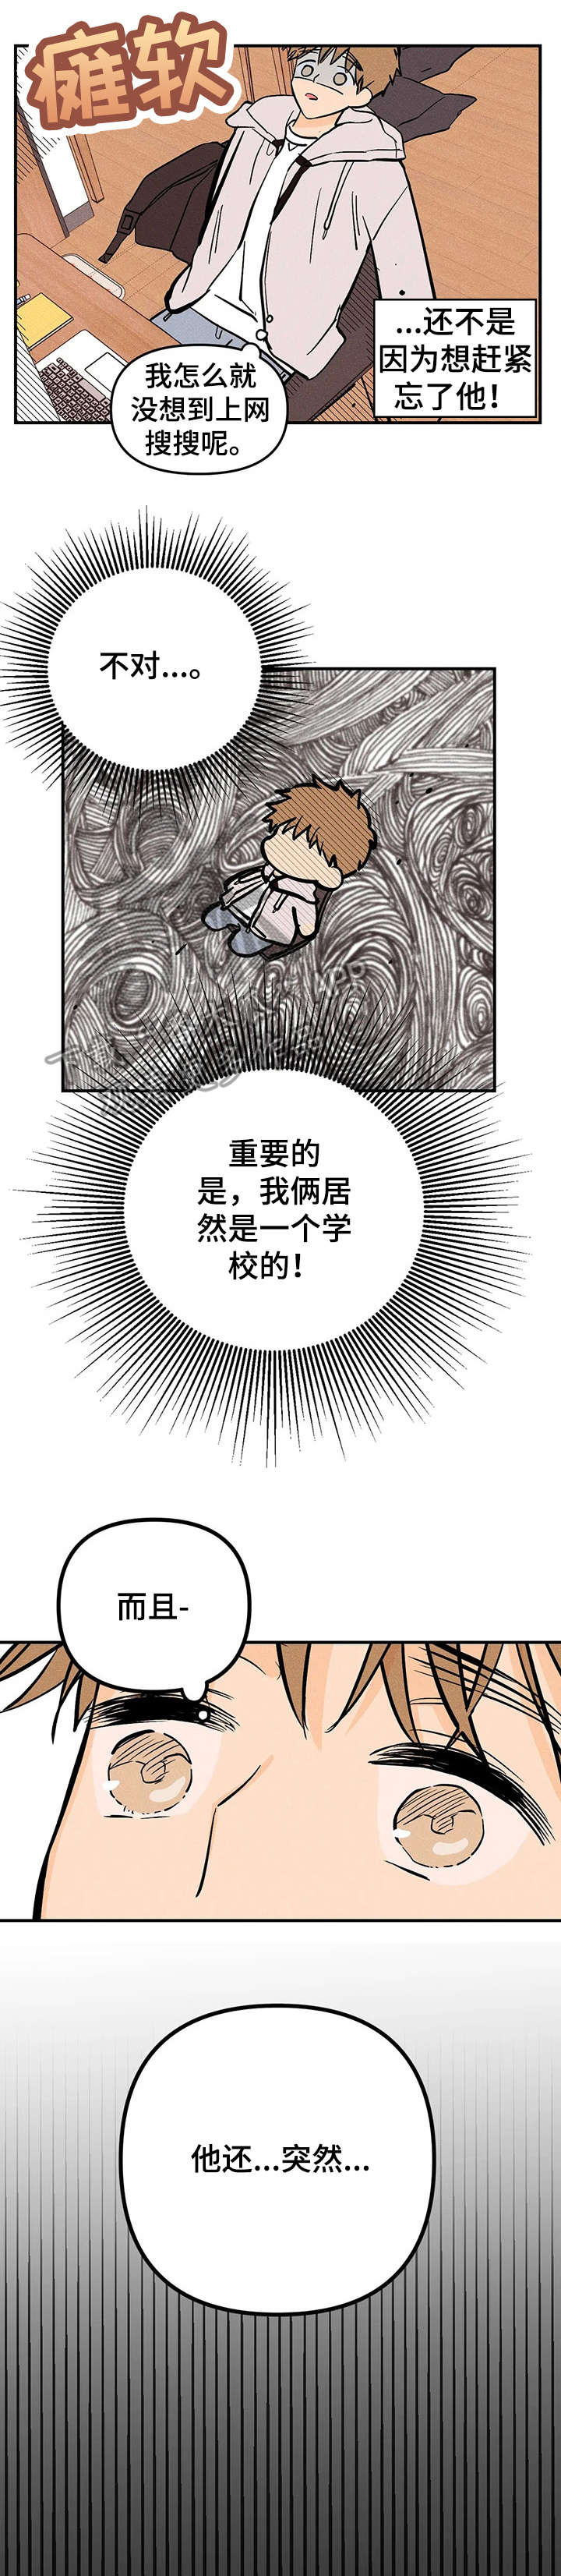 爱的赞歌中文版漫画,第10章：上车4图